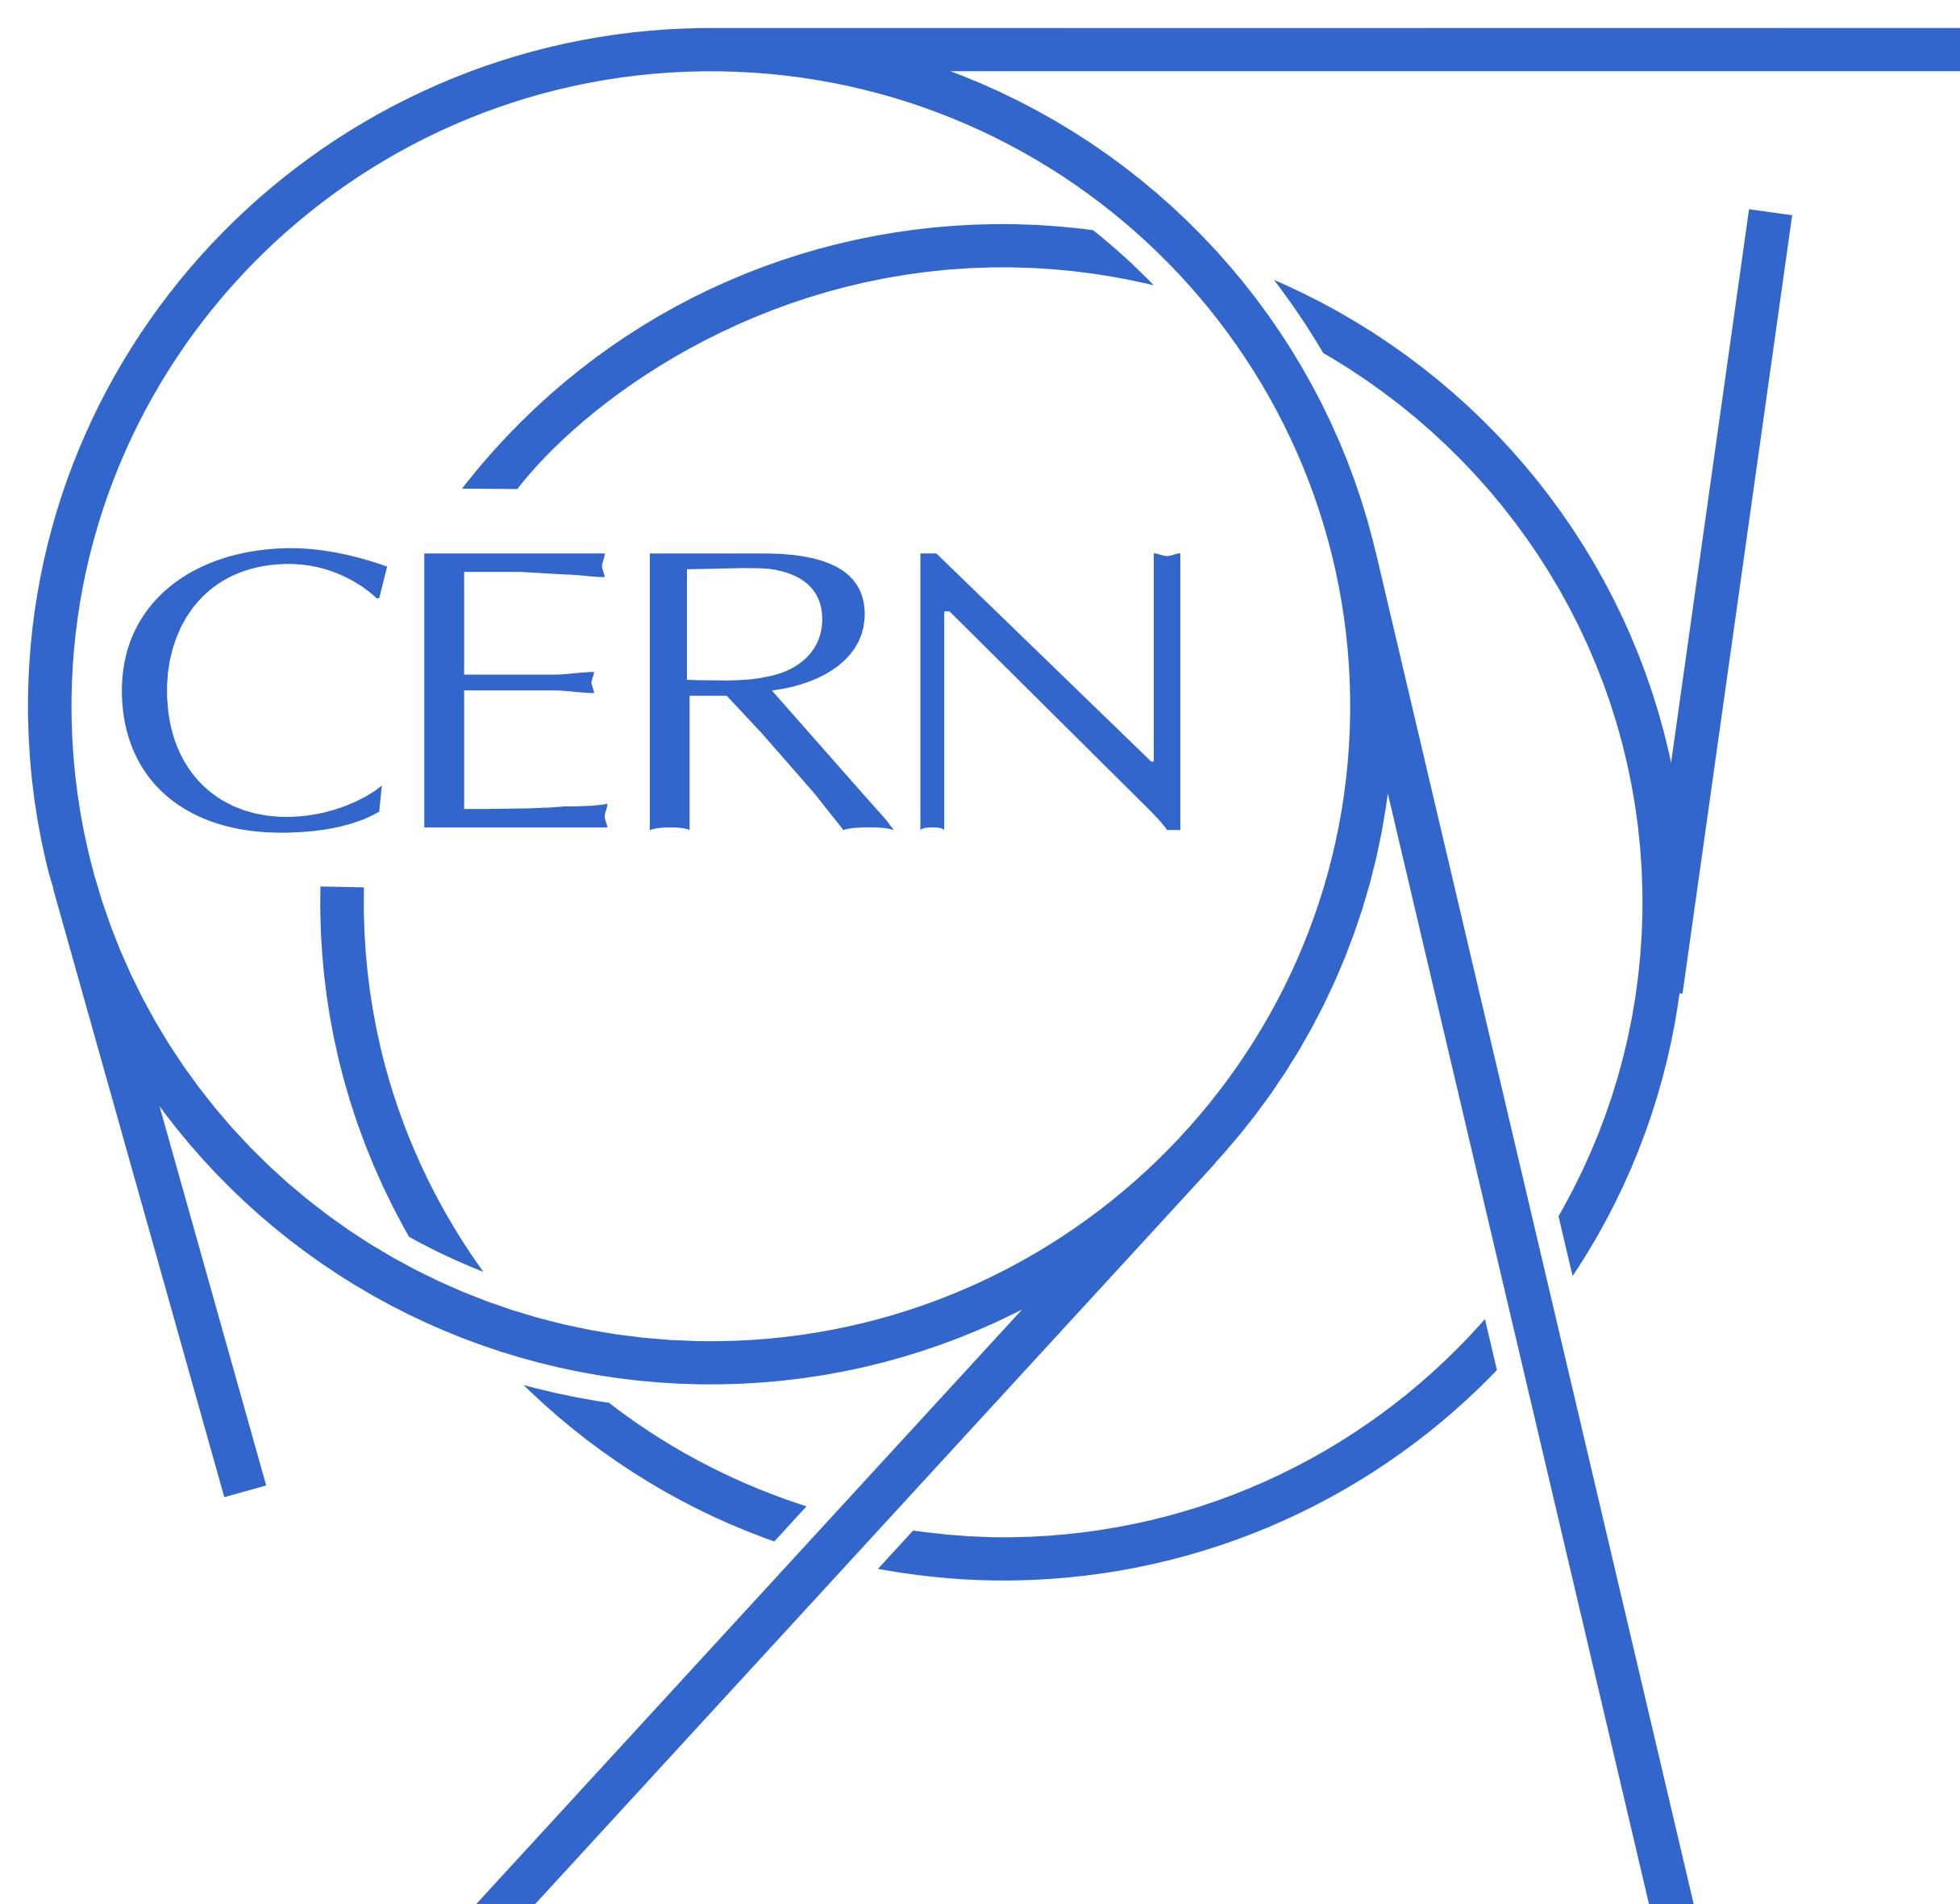 CERN - Conseil Européen pour la Recherche Nucléaire - ЦЕРН - Европейский Центр ядерных исследований - Европейская организация по ядерным исследованиям